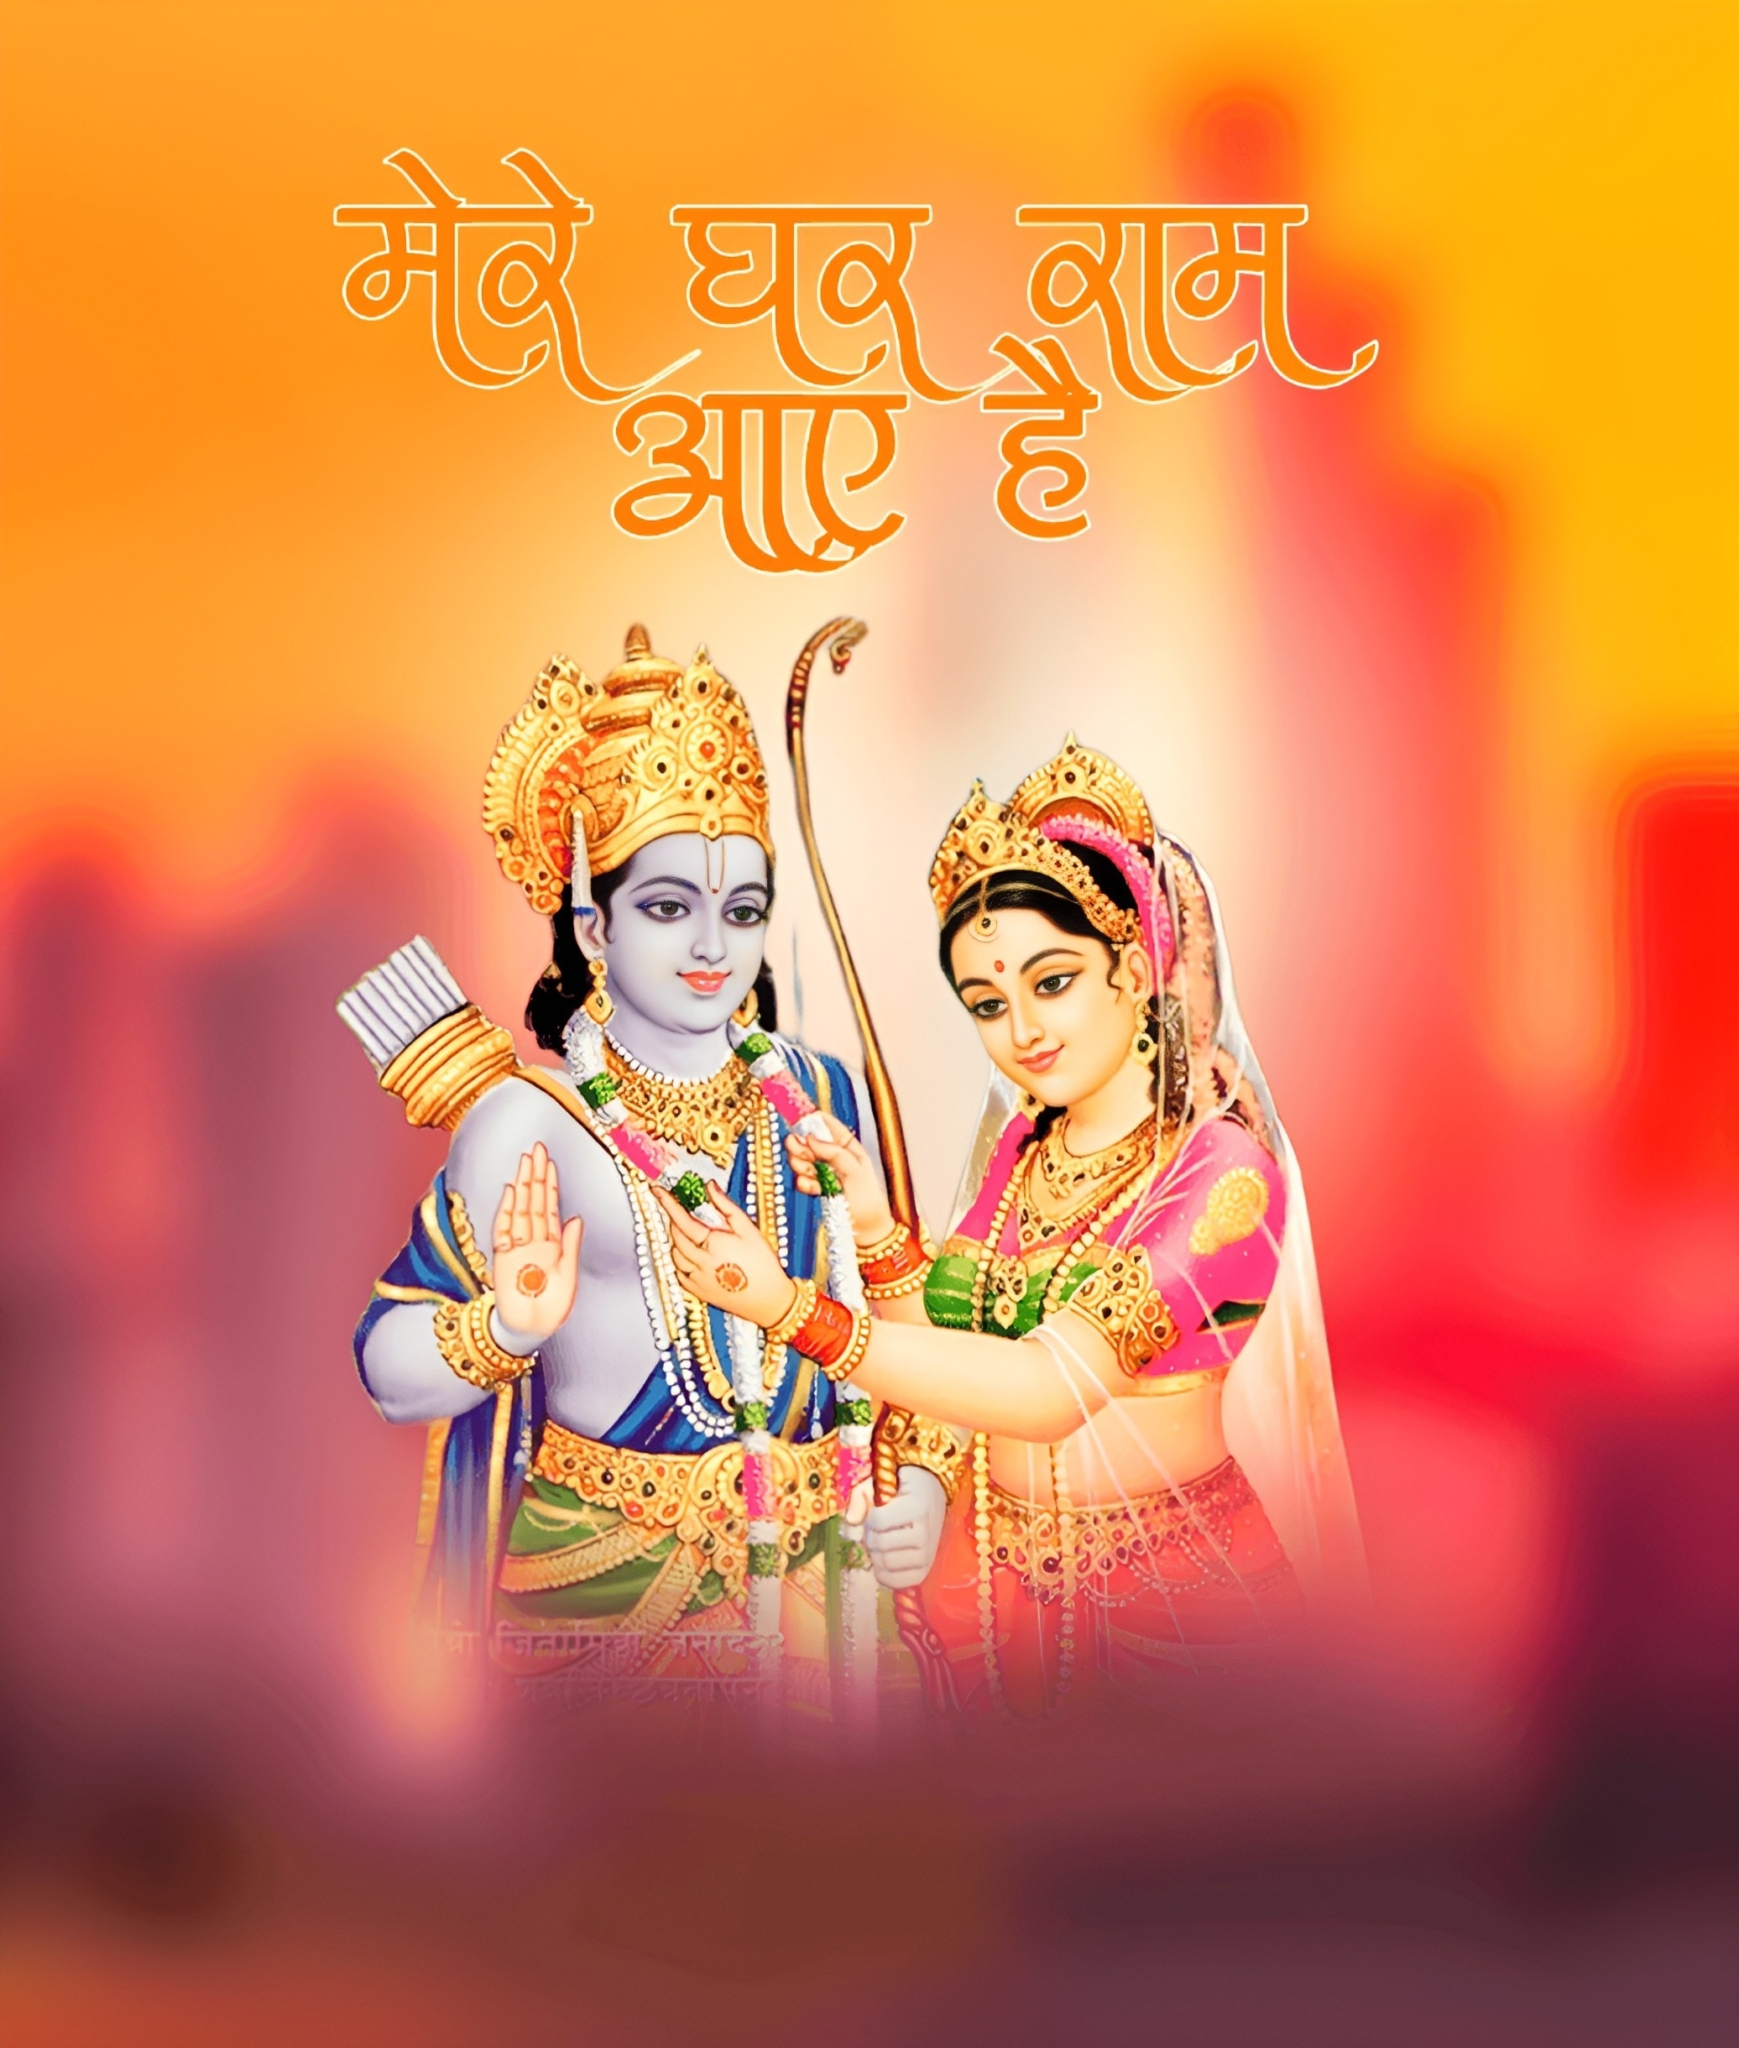 Lord Jay Shree Ram Image With Sita Mata